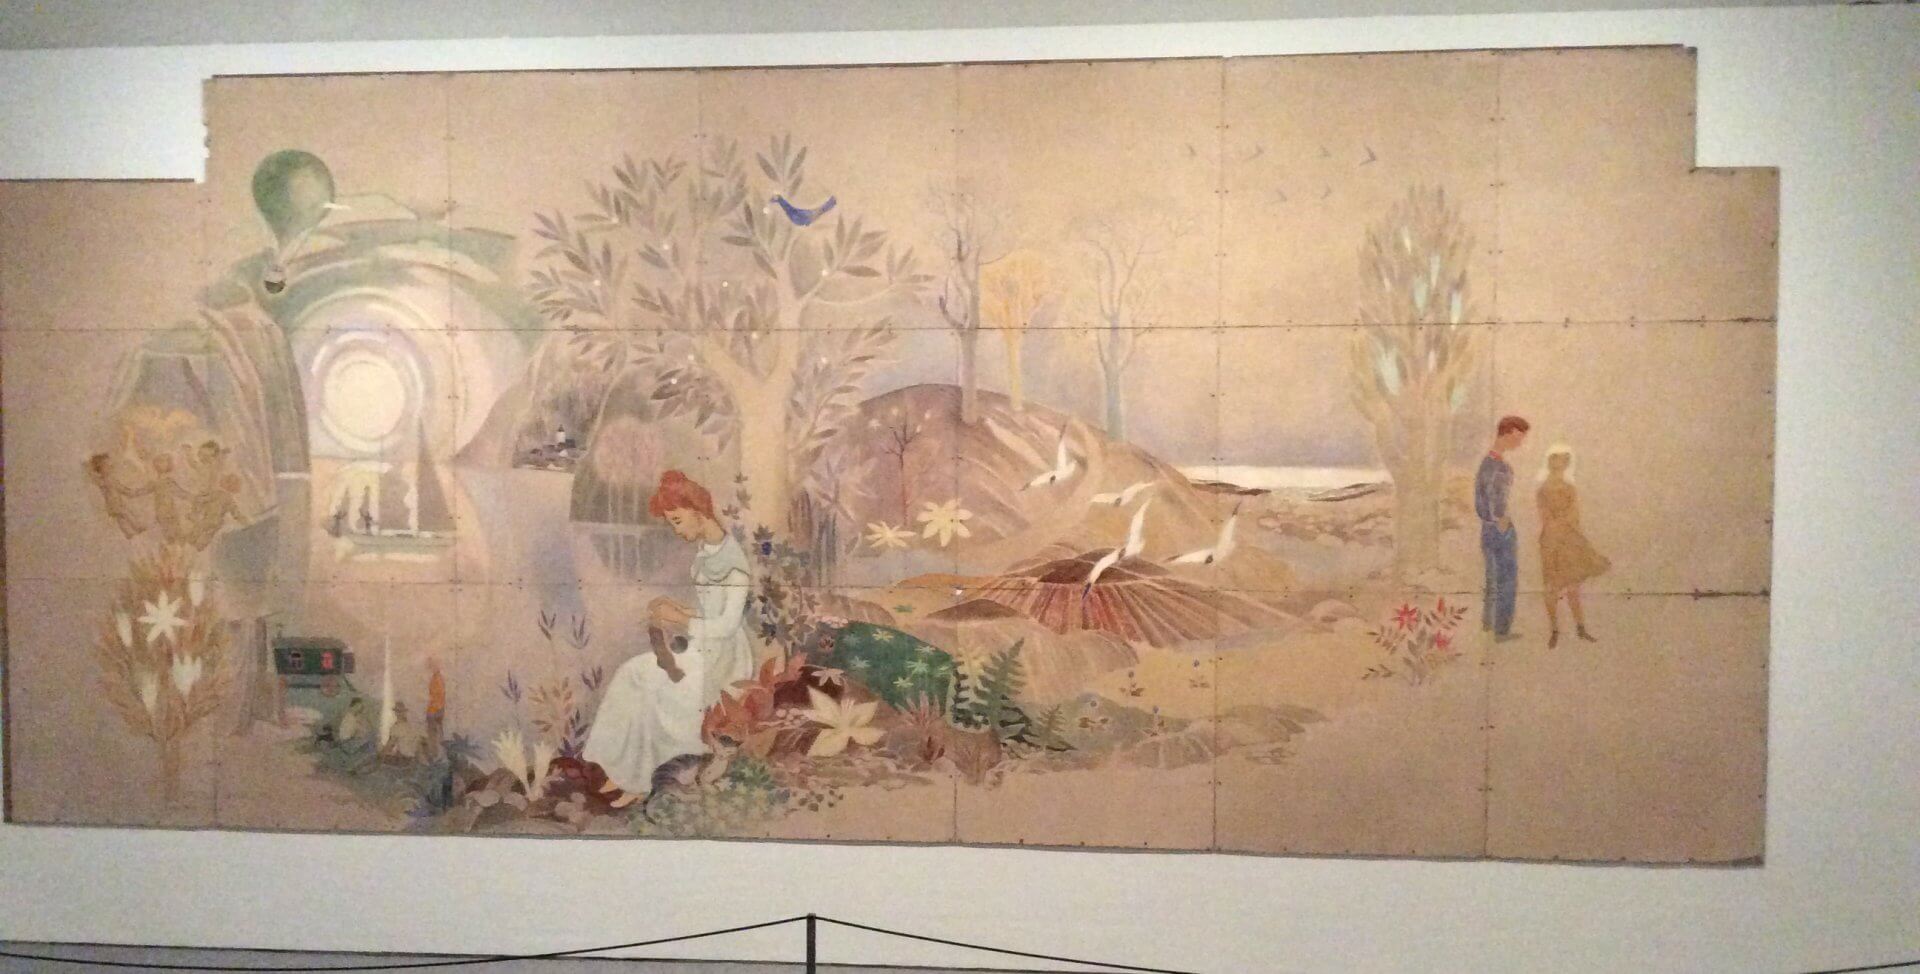 壁画「遊び」の隣に飾られていた作品。これまでのトーベ作品に共通する淡いタッチと独特の世界観が描かれている